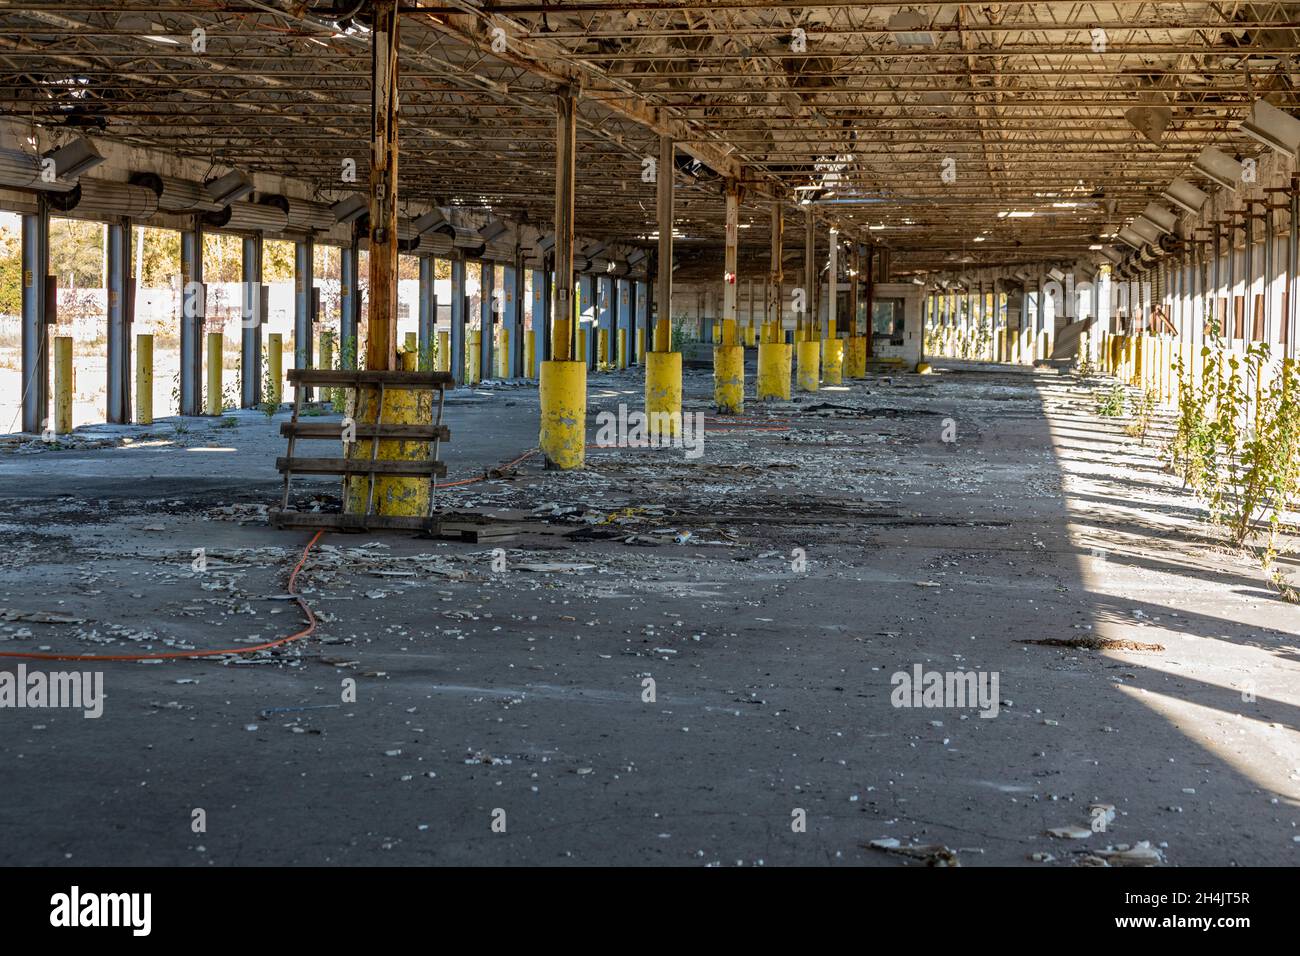 Detroit, Michigan - il carico attracca ad un terminale abbandonato del camion, precedentemente operato dai servizi di trasporto universali. Foto Stock